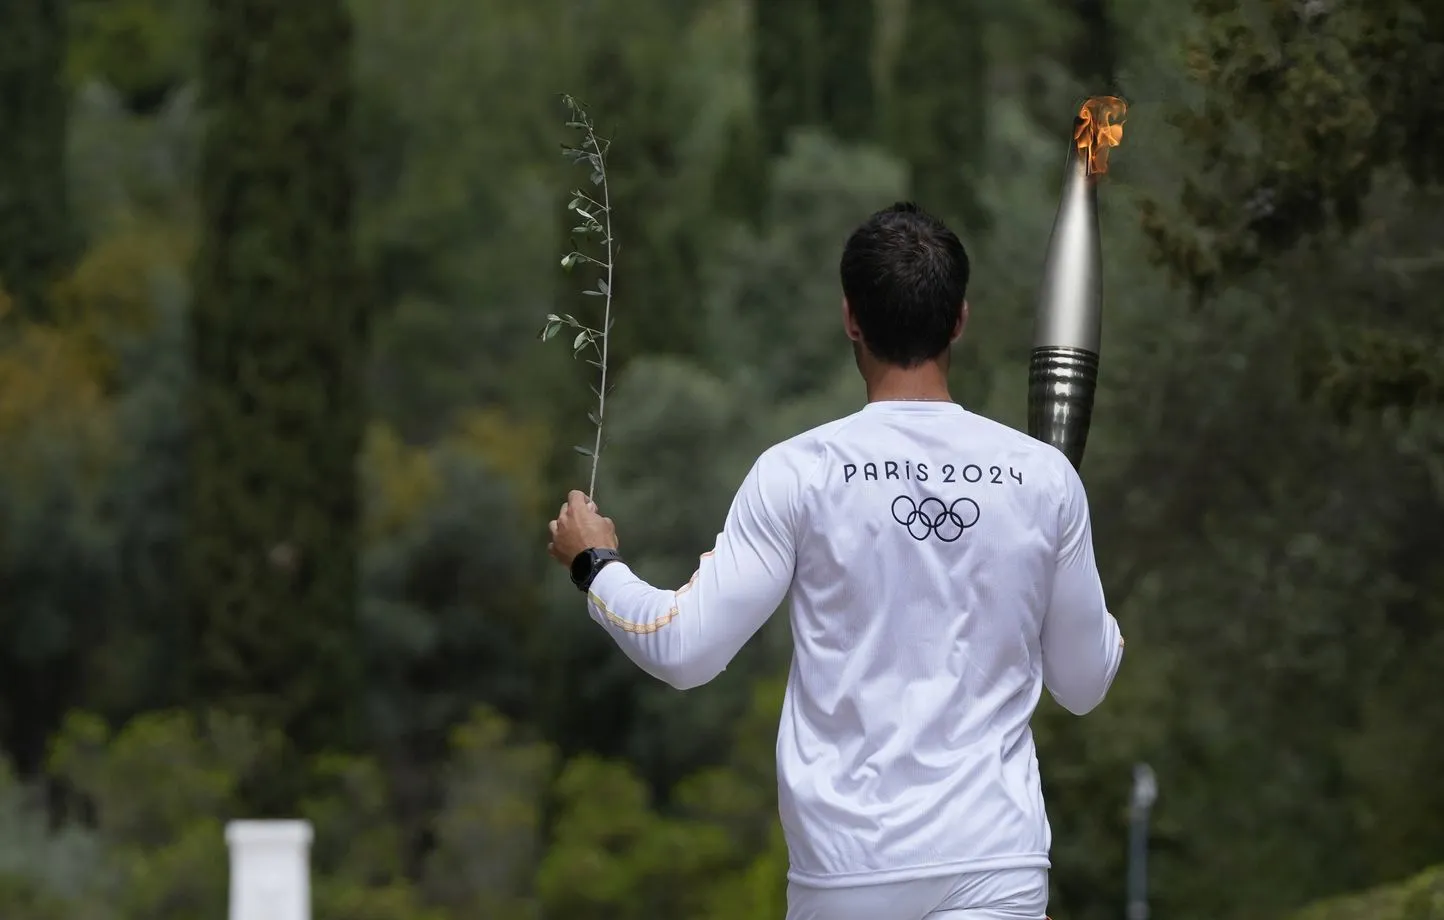 JO de Paris : l’identité du dernier relayeur de la flamme olympique dévoilée ? Cette rumeur qui divise la Toile